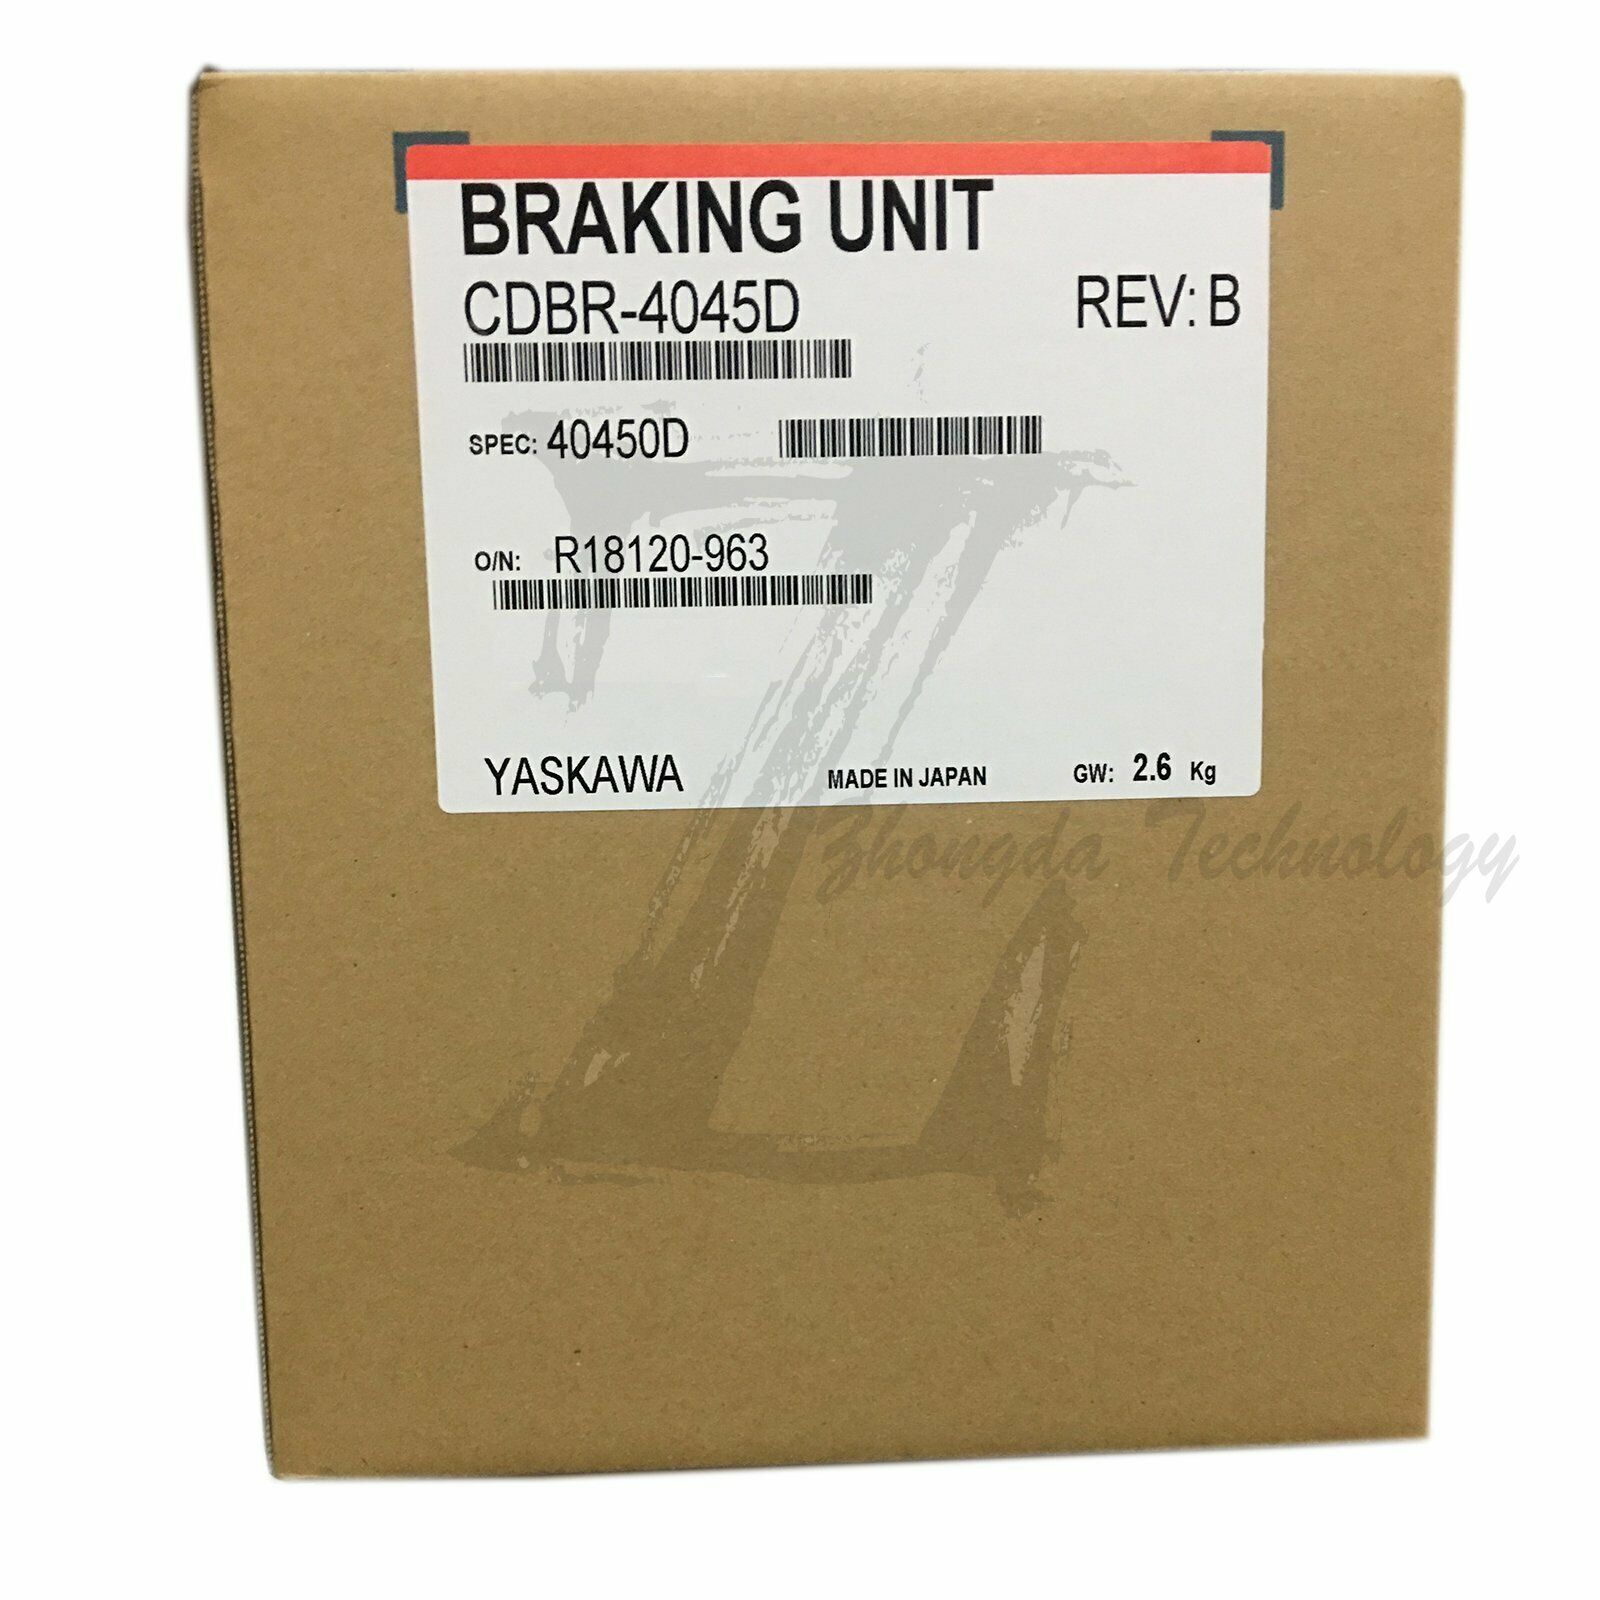 New In Box Yaskawa CDBR-4045D Inverter braking unit CDBR-4045D